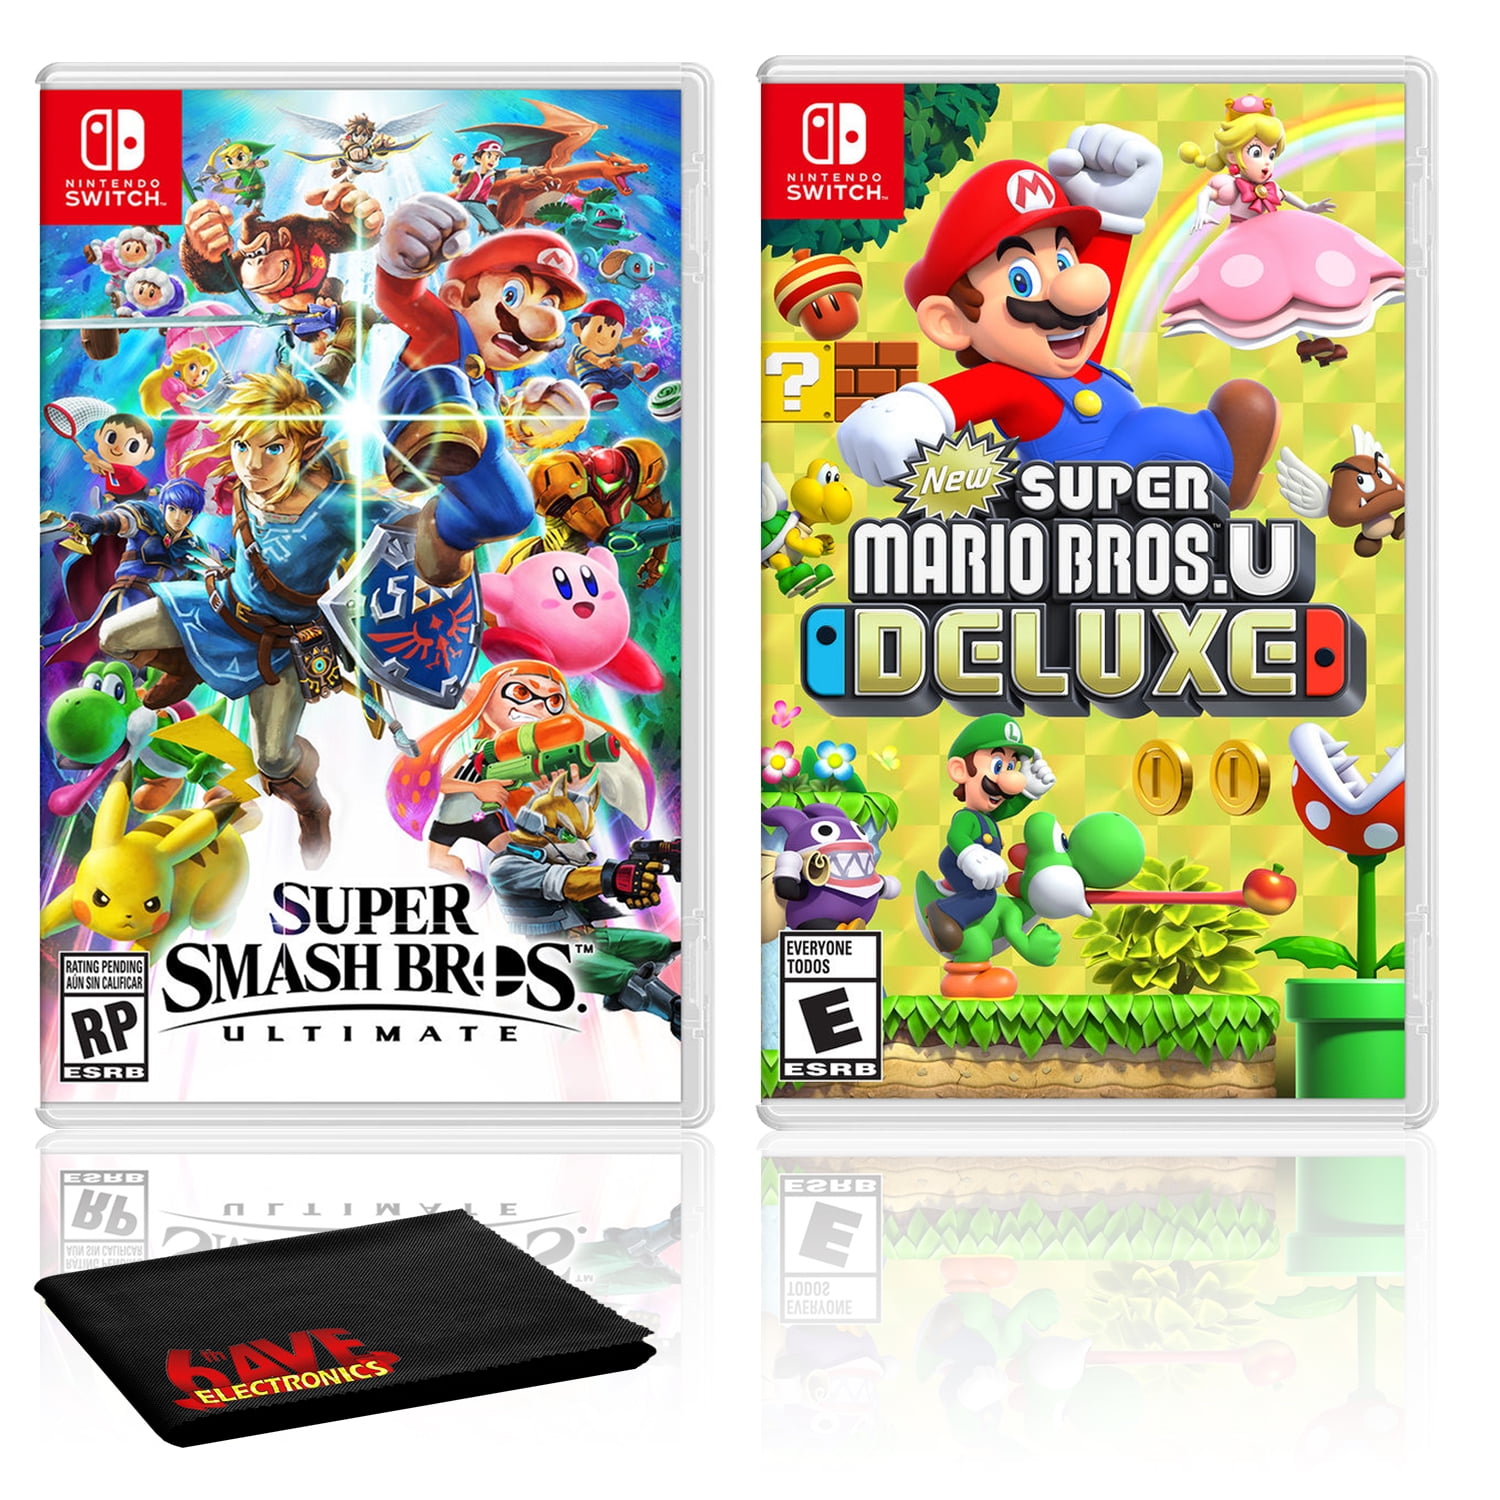 Smash Bros. Ultimate with Super Mario U Deluxe, Nintendo Switch, - Walmart.com